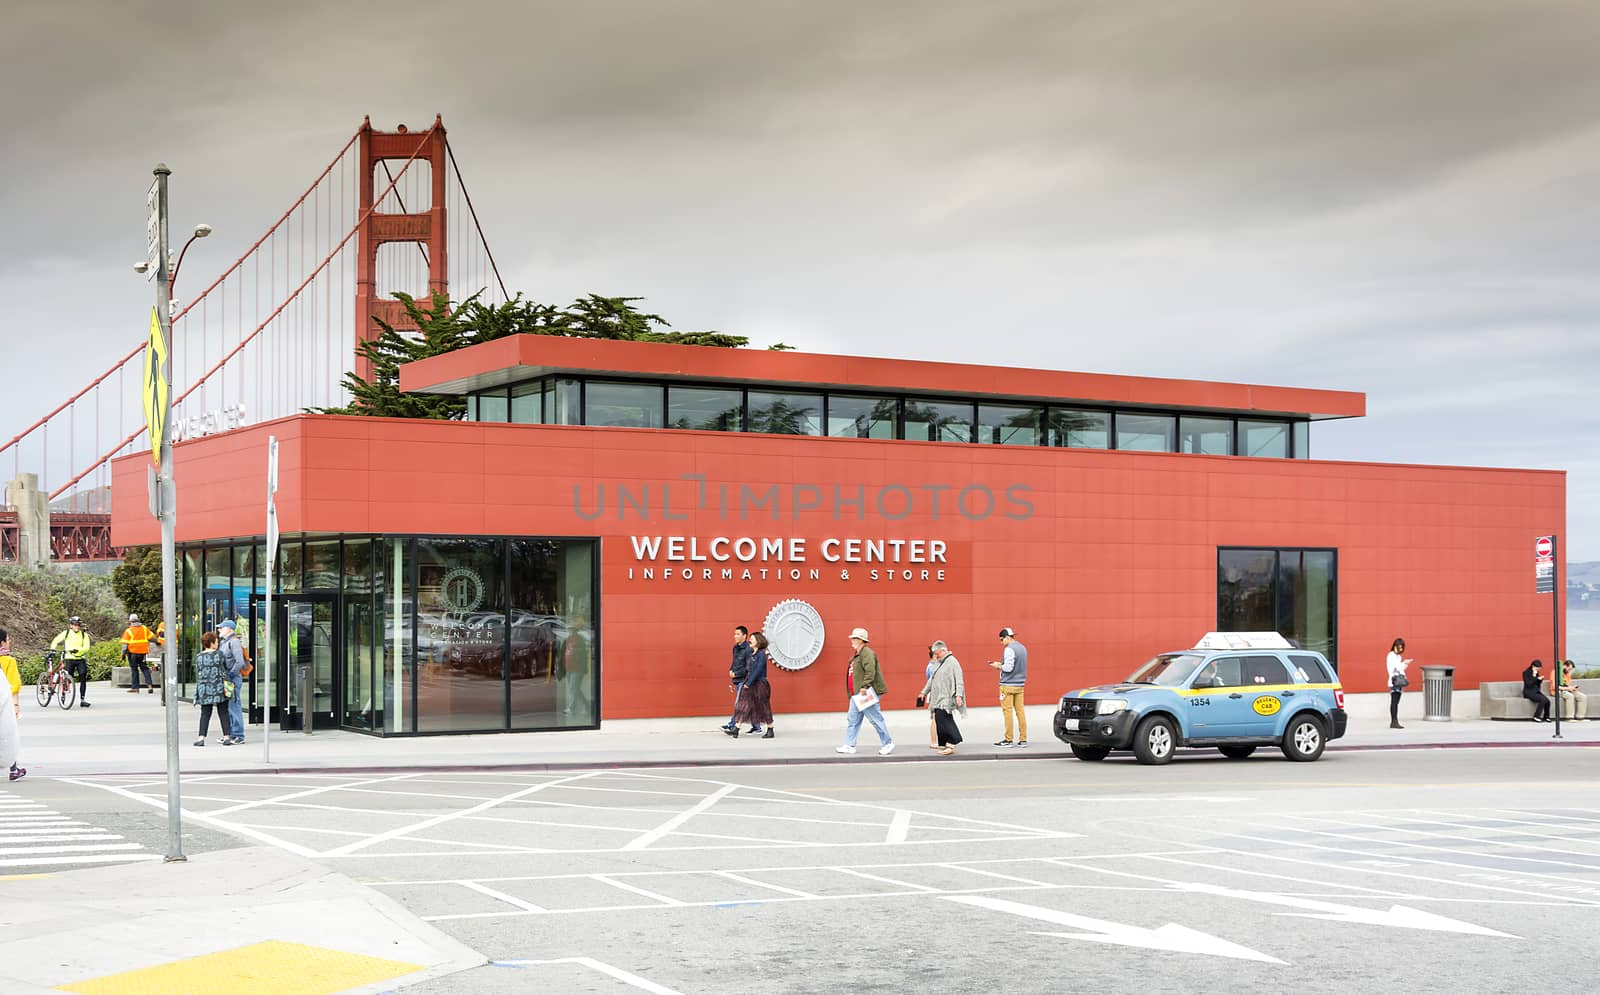 The Golden Gate Bridge Visitor Center, by rarrarorro